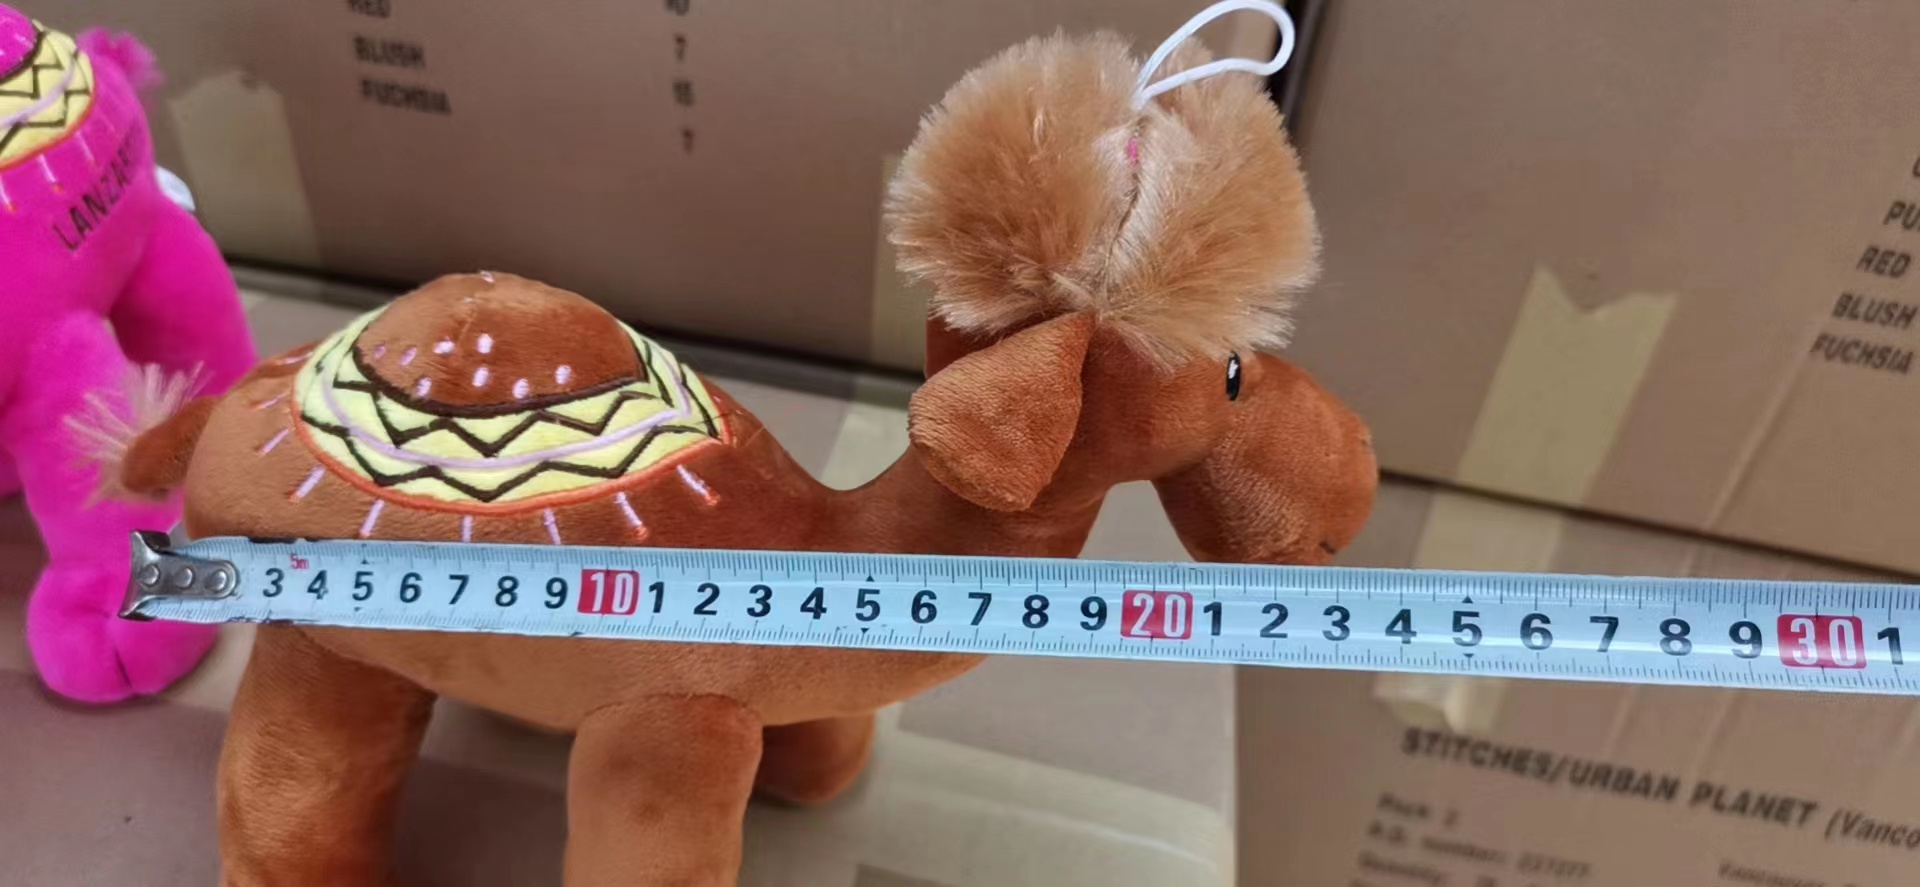 新款毛绒儿童玩具动物公仔三个尺码可绣花LOGO的毛绒骆驼详情10